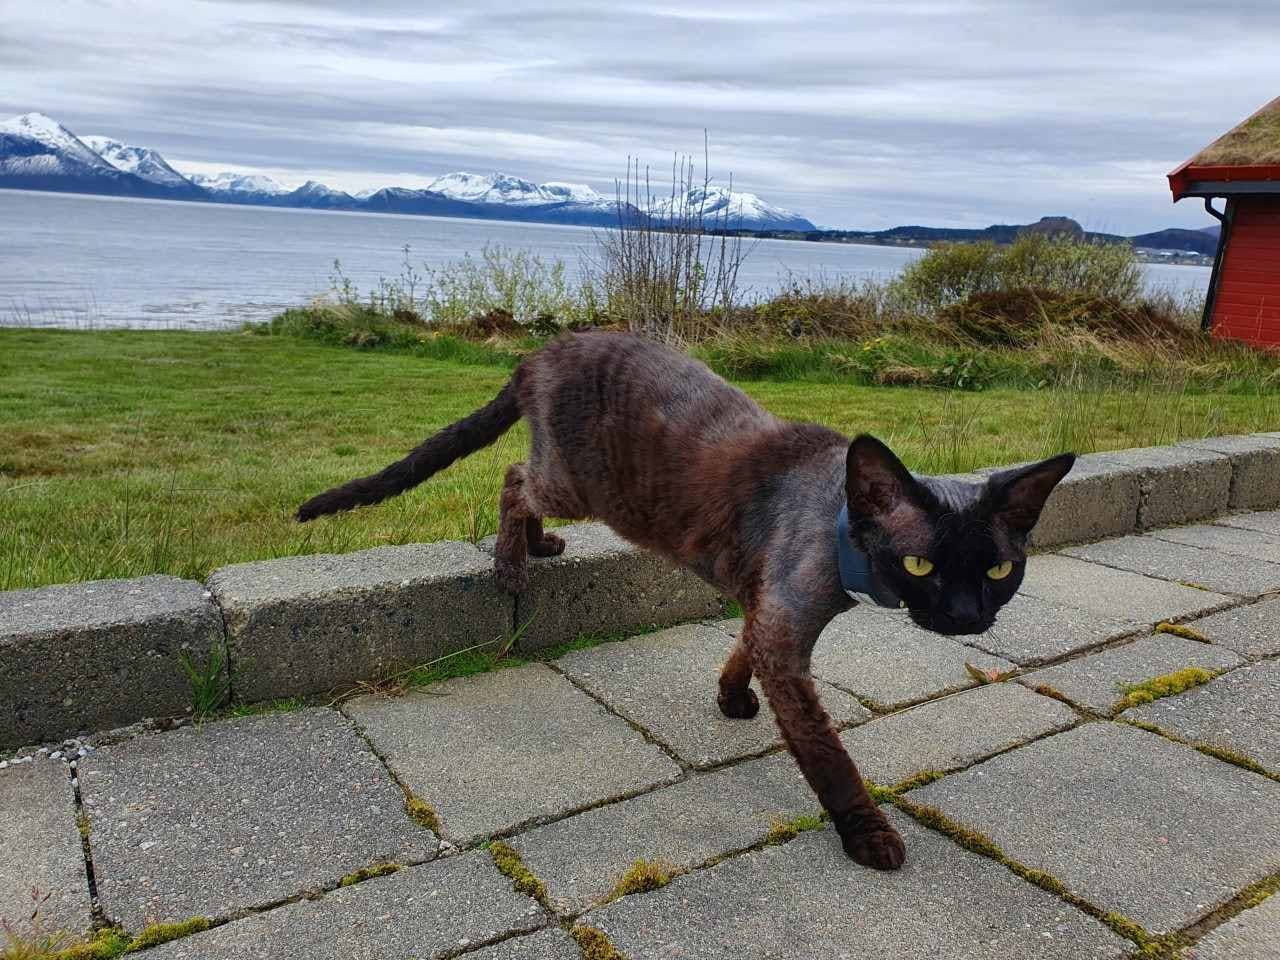 Vakker bakgrunn på bilde av en devon rex katt i Norge